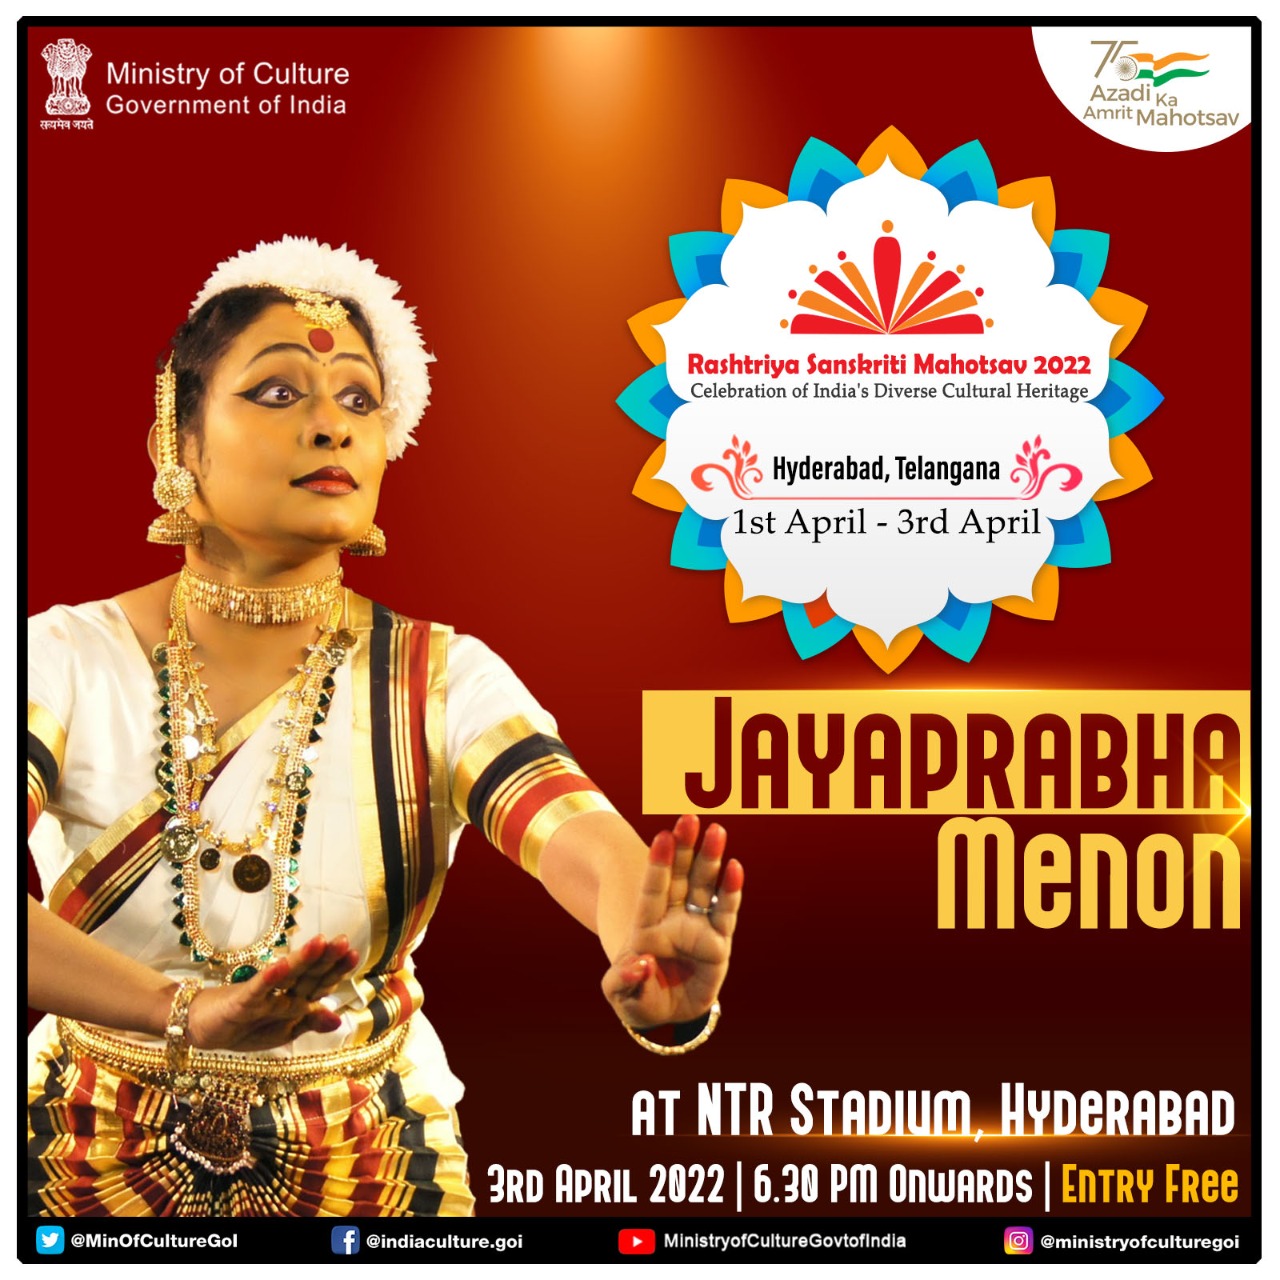 Hyderabad to host a 3-day colourful cultural extravaganza,   Rashtriya Sanskriti Mahotsav from April 1st at NTR Stadium!